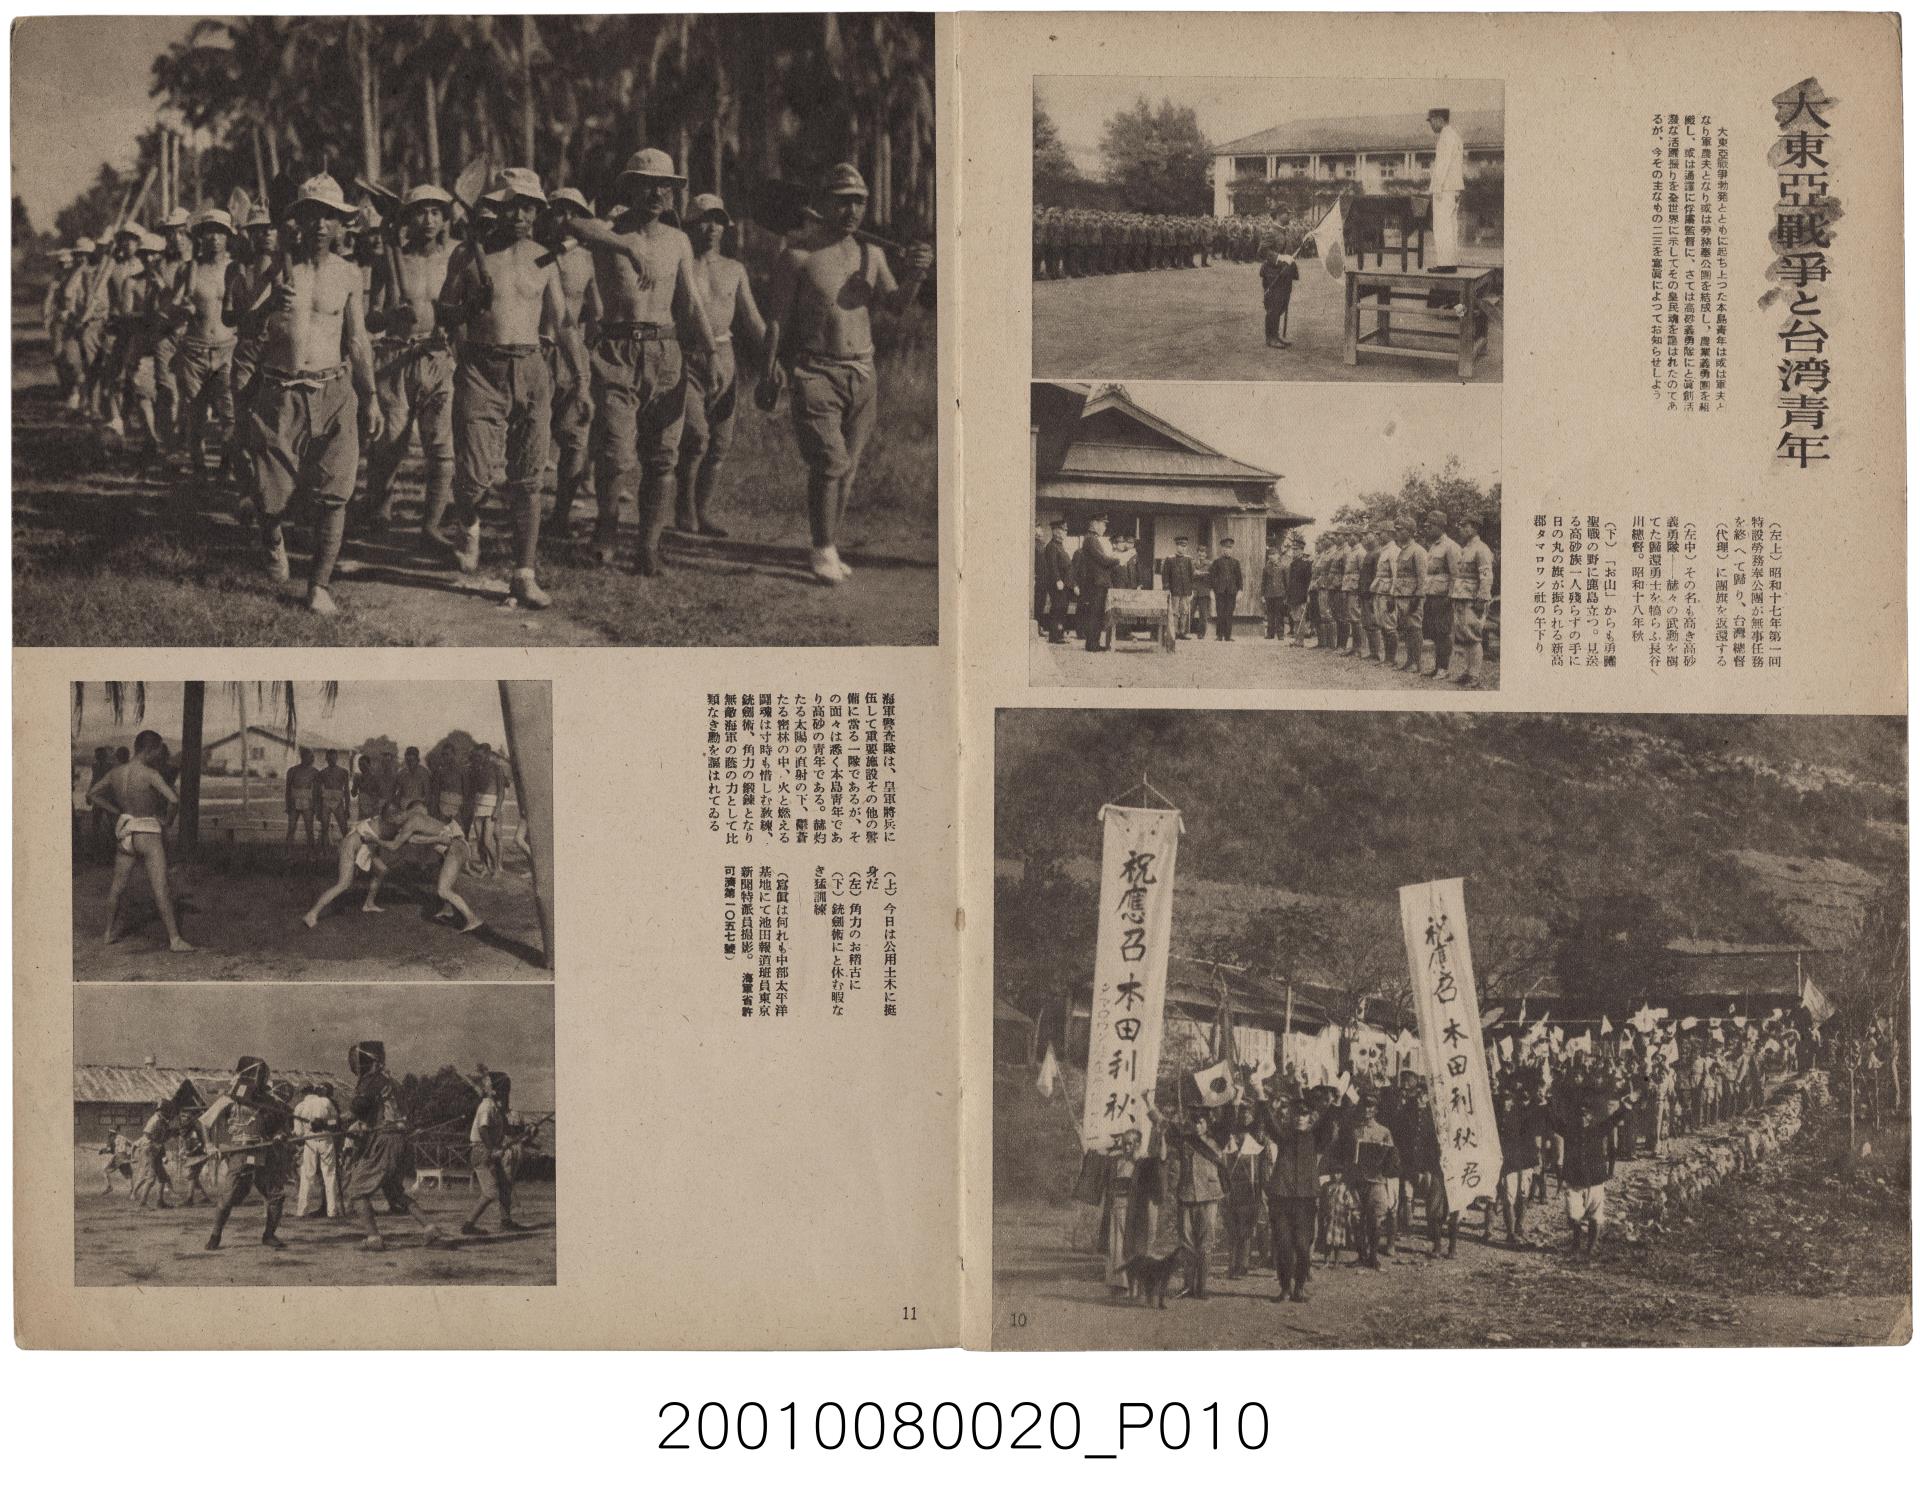 戦時下 台湾 写真報道『大東亜戦争と台湾青年』朝日新聞社/昭和19年 